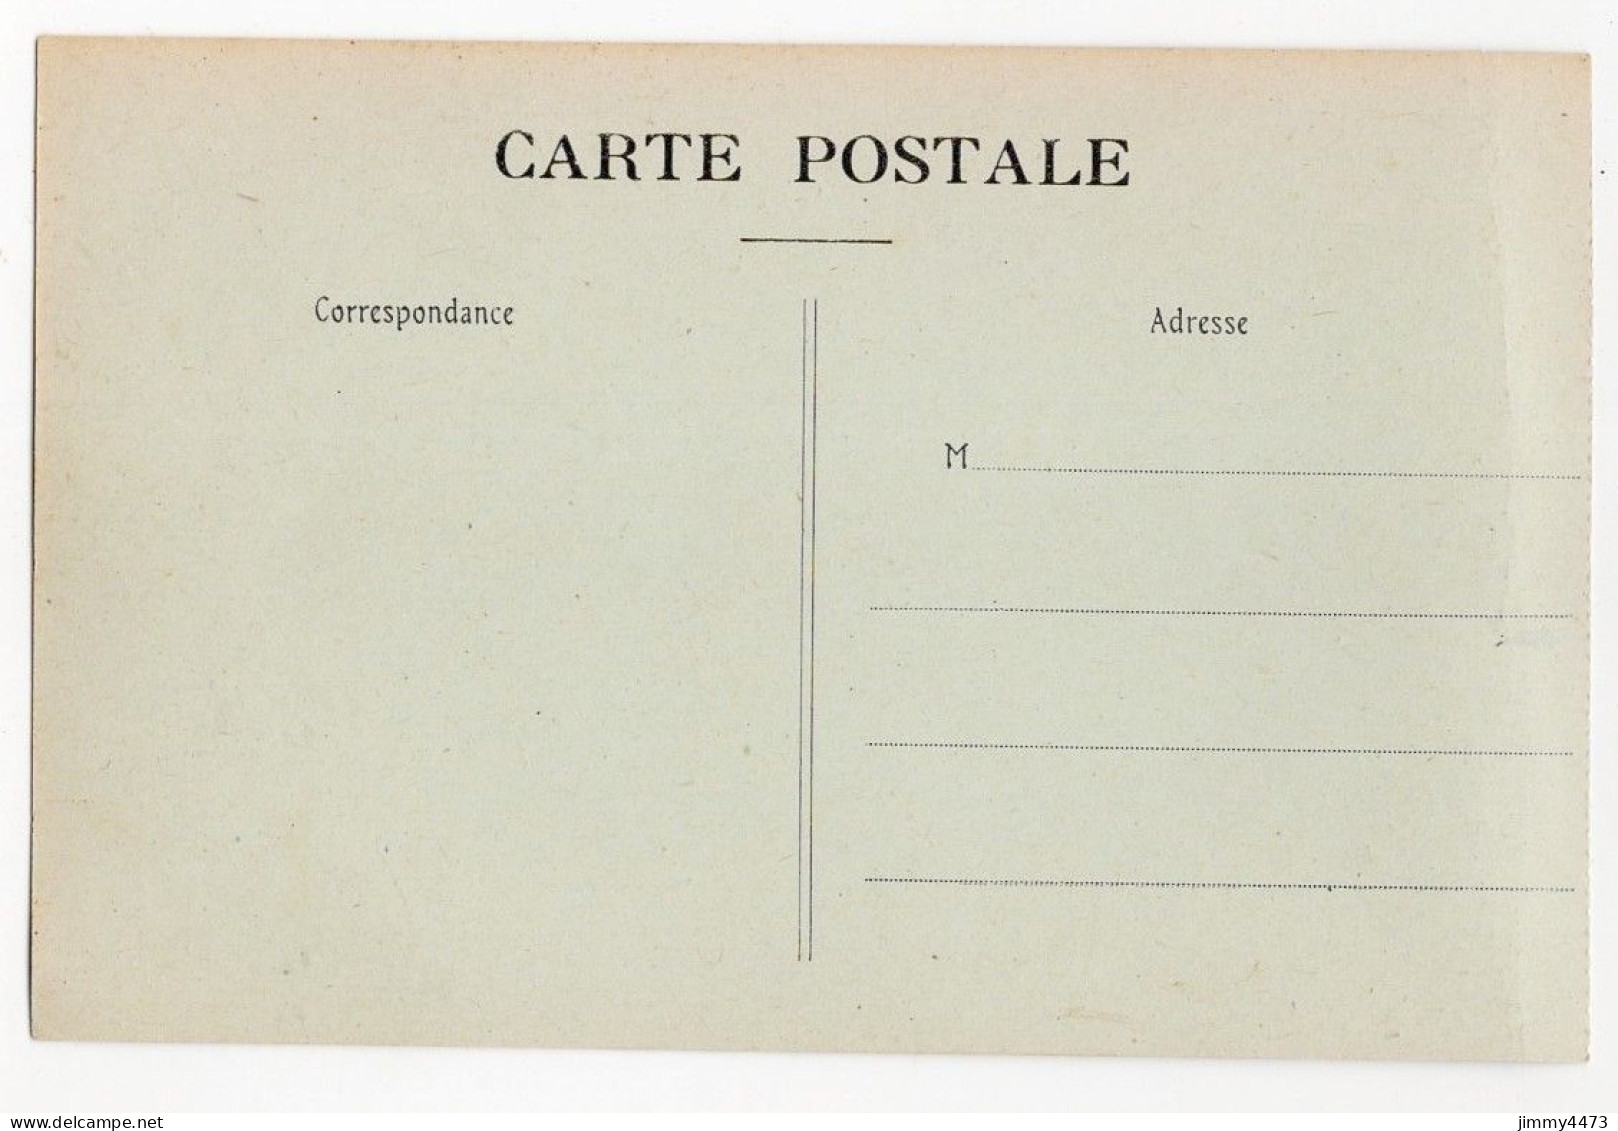 CPA - LA POMPELLE ( Puisieulx ) Le Cimetière - N° 2 - Edit. Cuisinier Reims - Guerre 1914-18